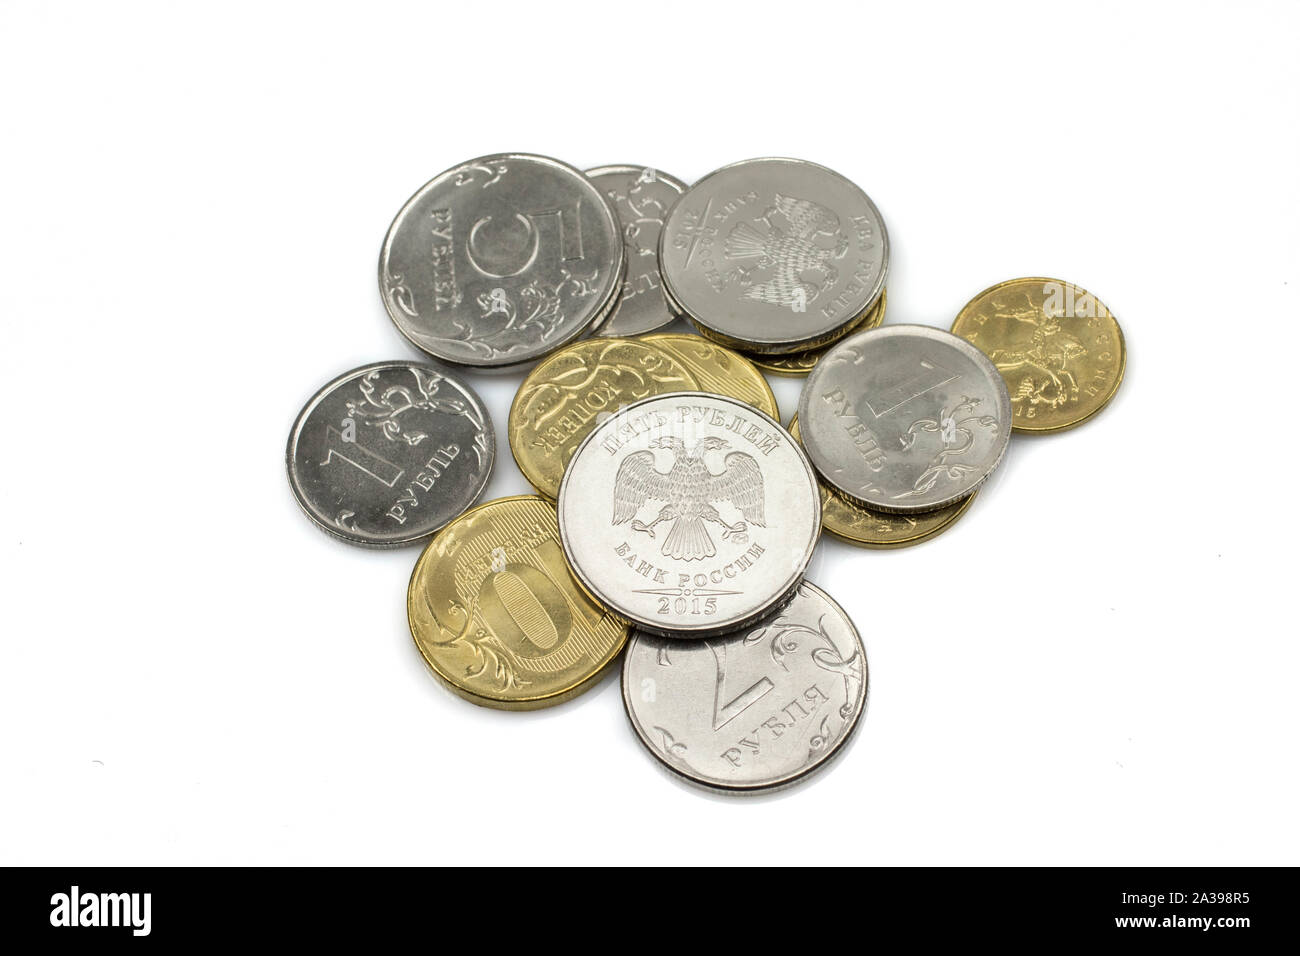 Ein gut sortierter Stapel der Russischen Föderation Münzen erschossen, auf einem weißen Hintergrund isoliert Stockfoto